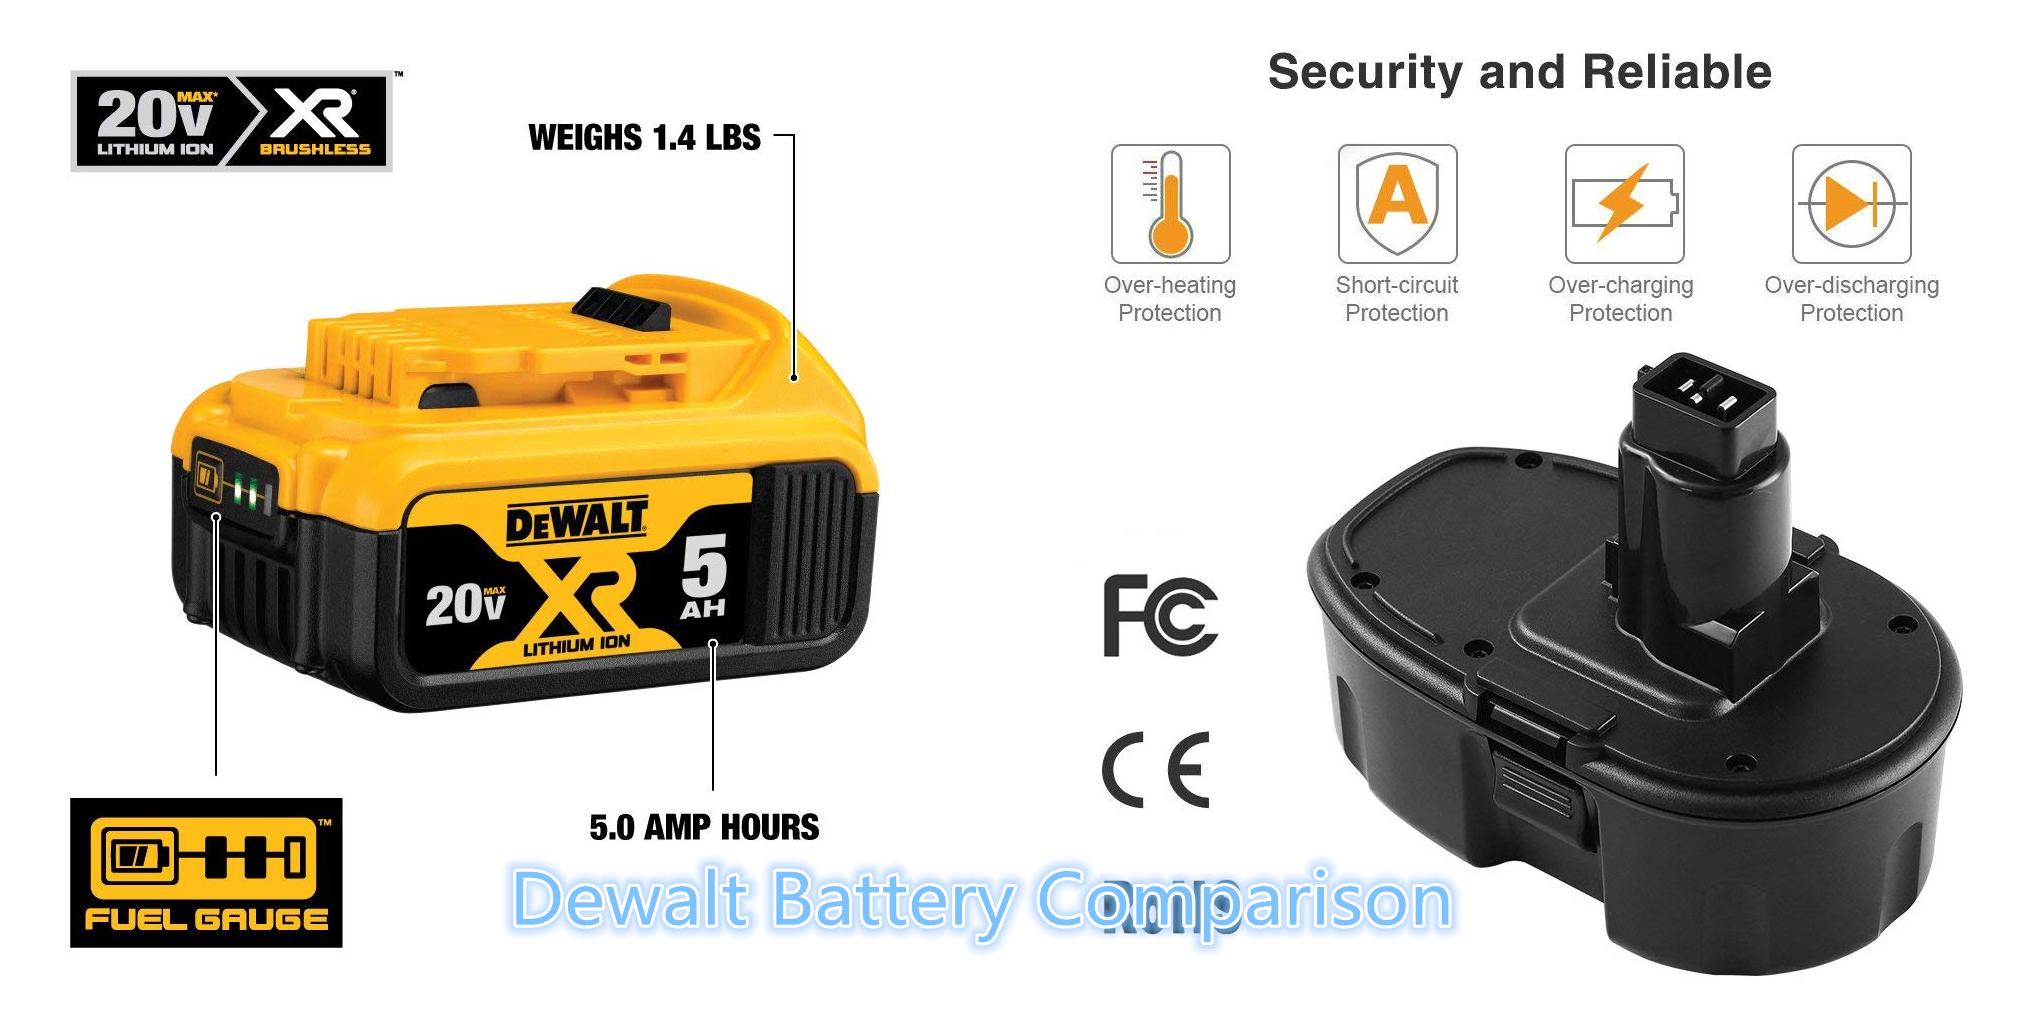 Dewalt Battery Comparison